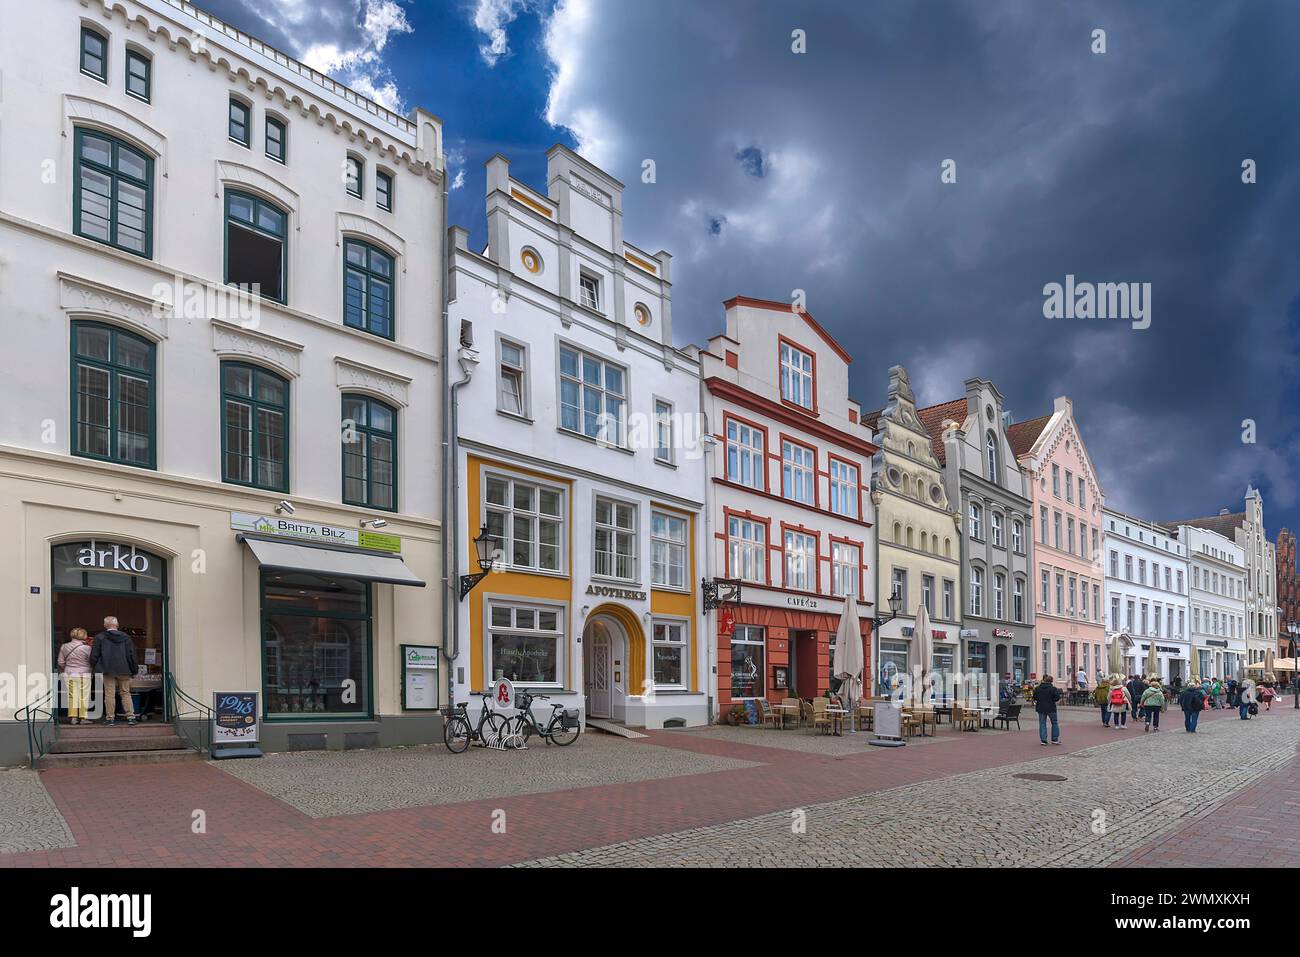 Façades de maisons historiques, Am Markt, Wismar, Mecklembourg-Poméranie occidentale, Allemagne Banque D'Images